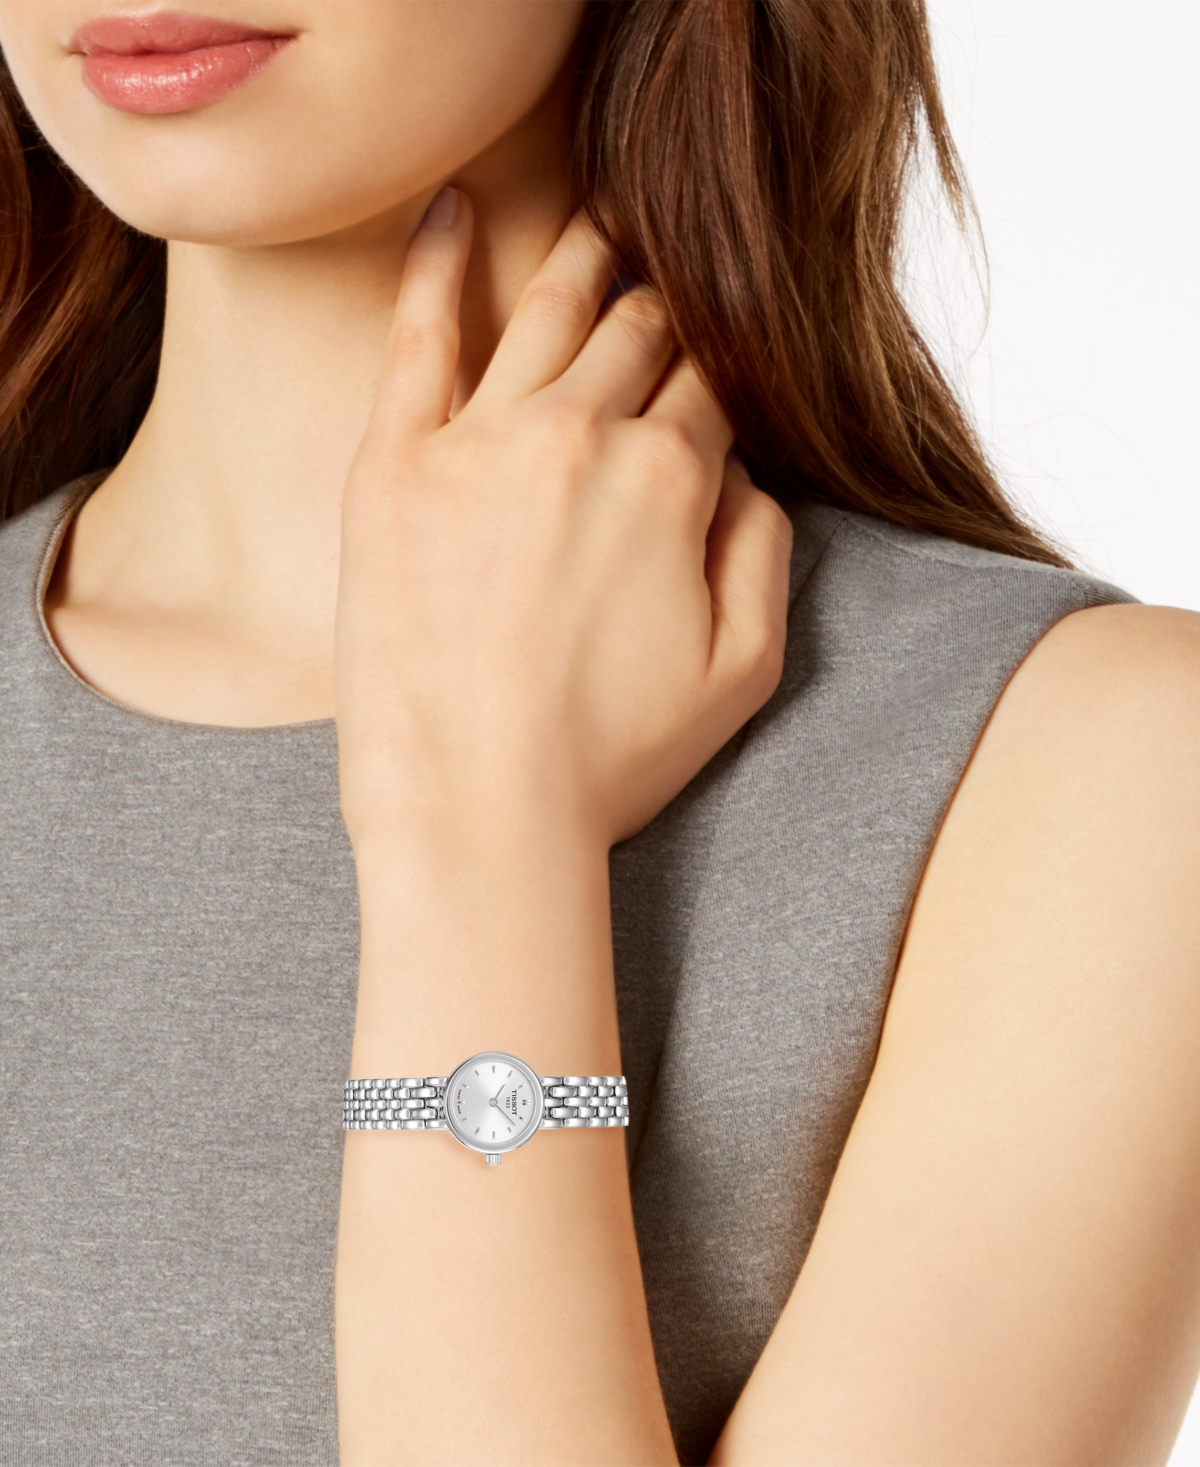 Shop Tissot Women's Swiss T-lady Lovely Stainless Steel Bracelet Watch 19.5mm In Silver